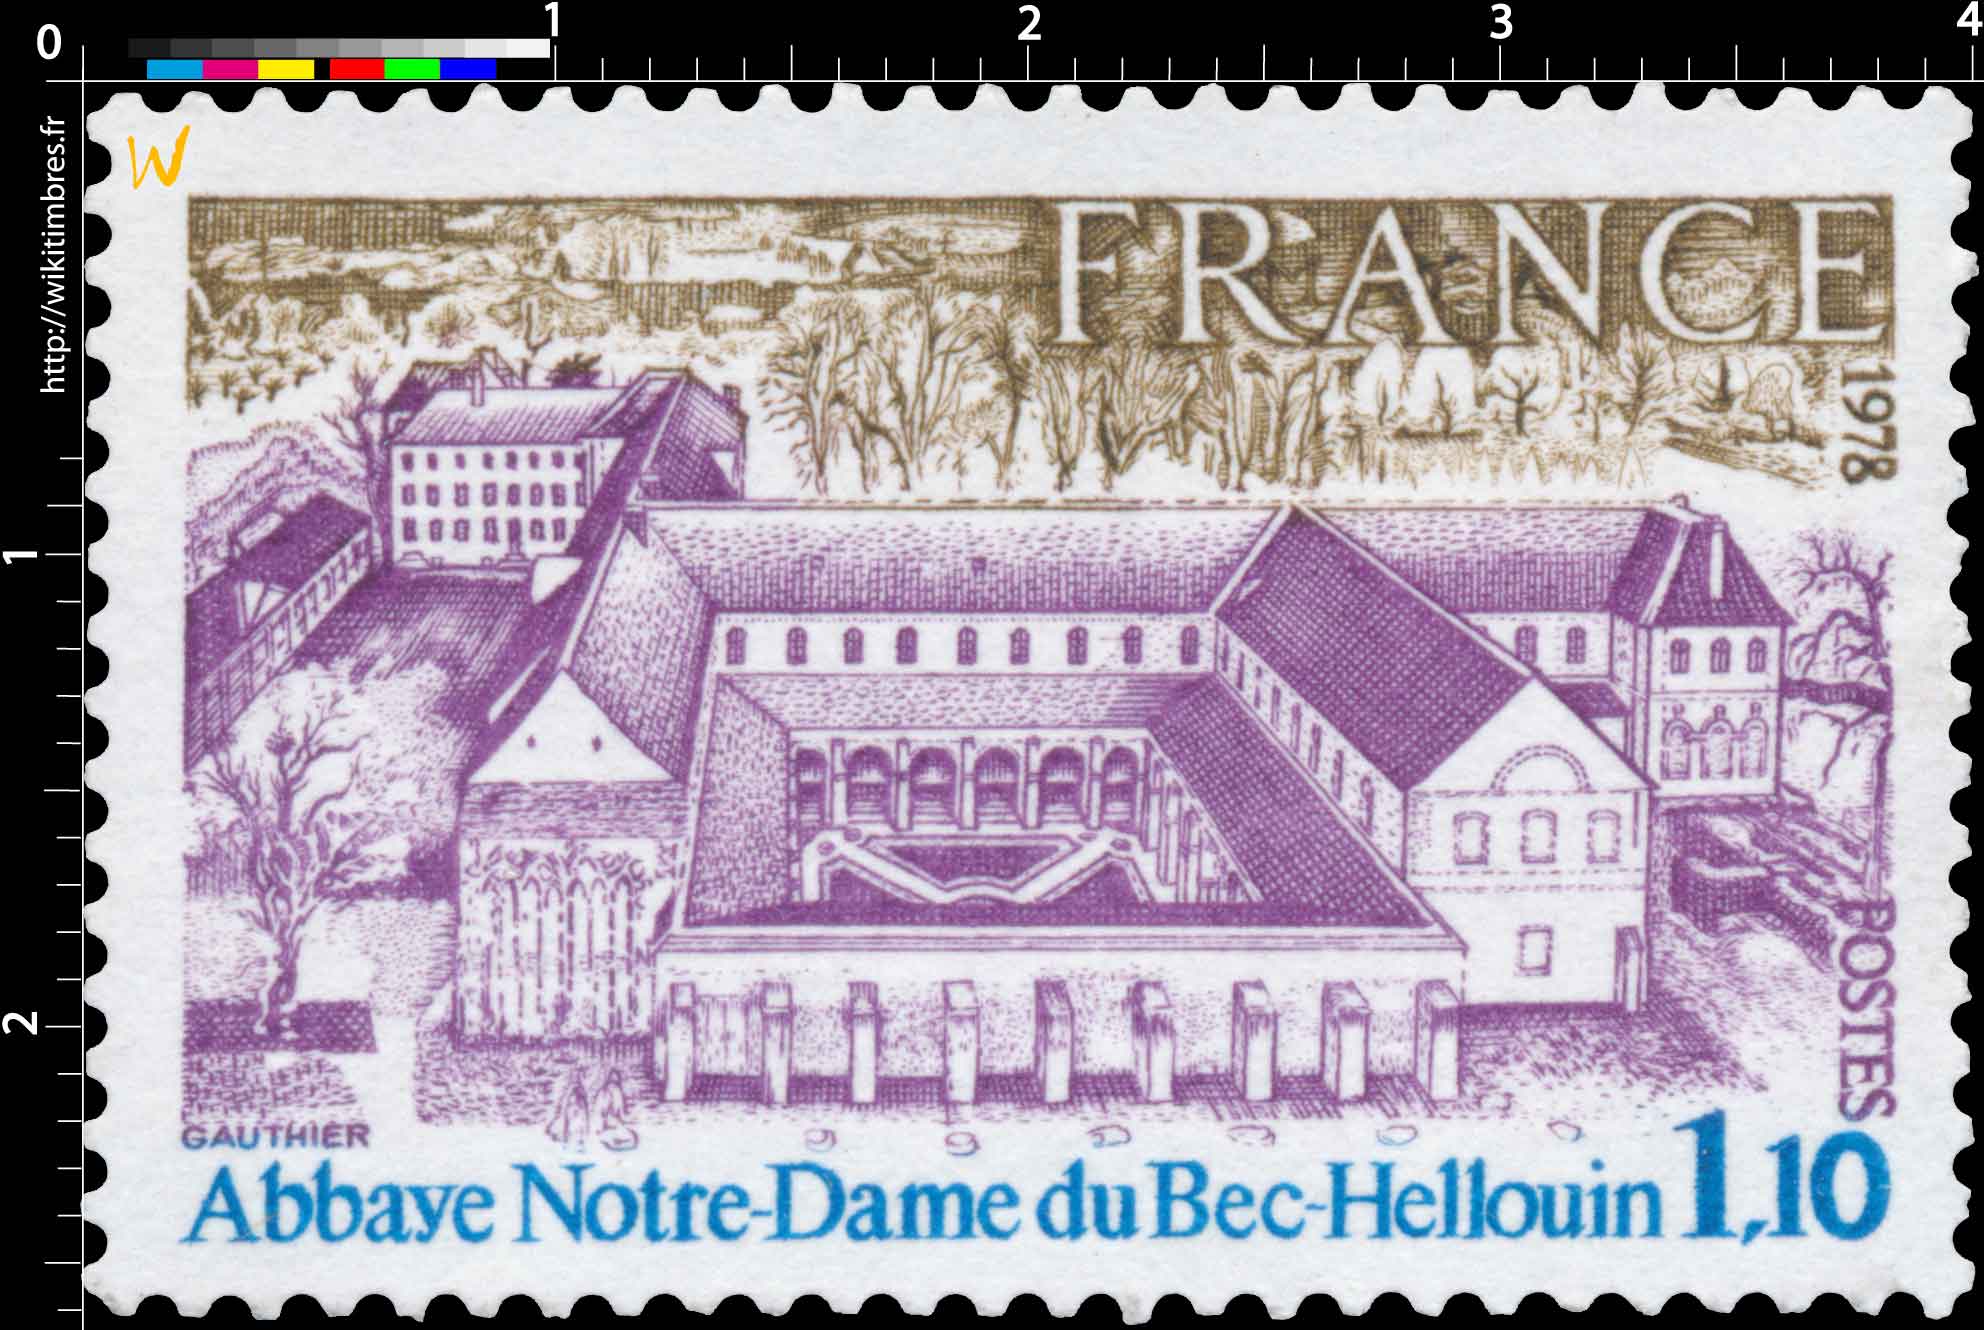 1978 Abbaye Notre-Dame du Bec-Hellouin